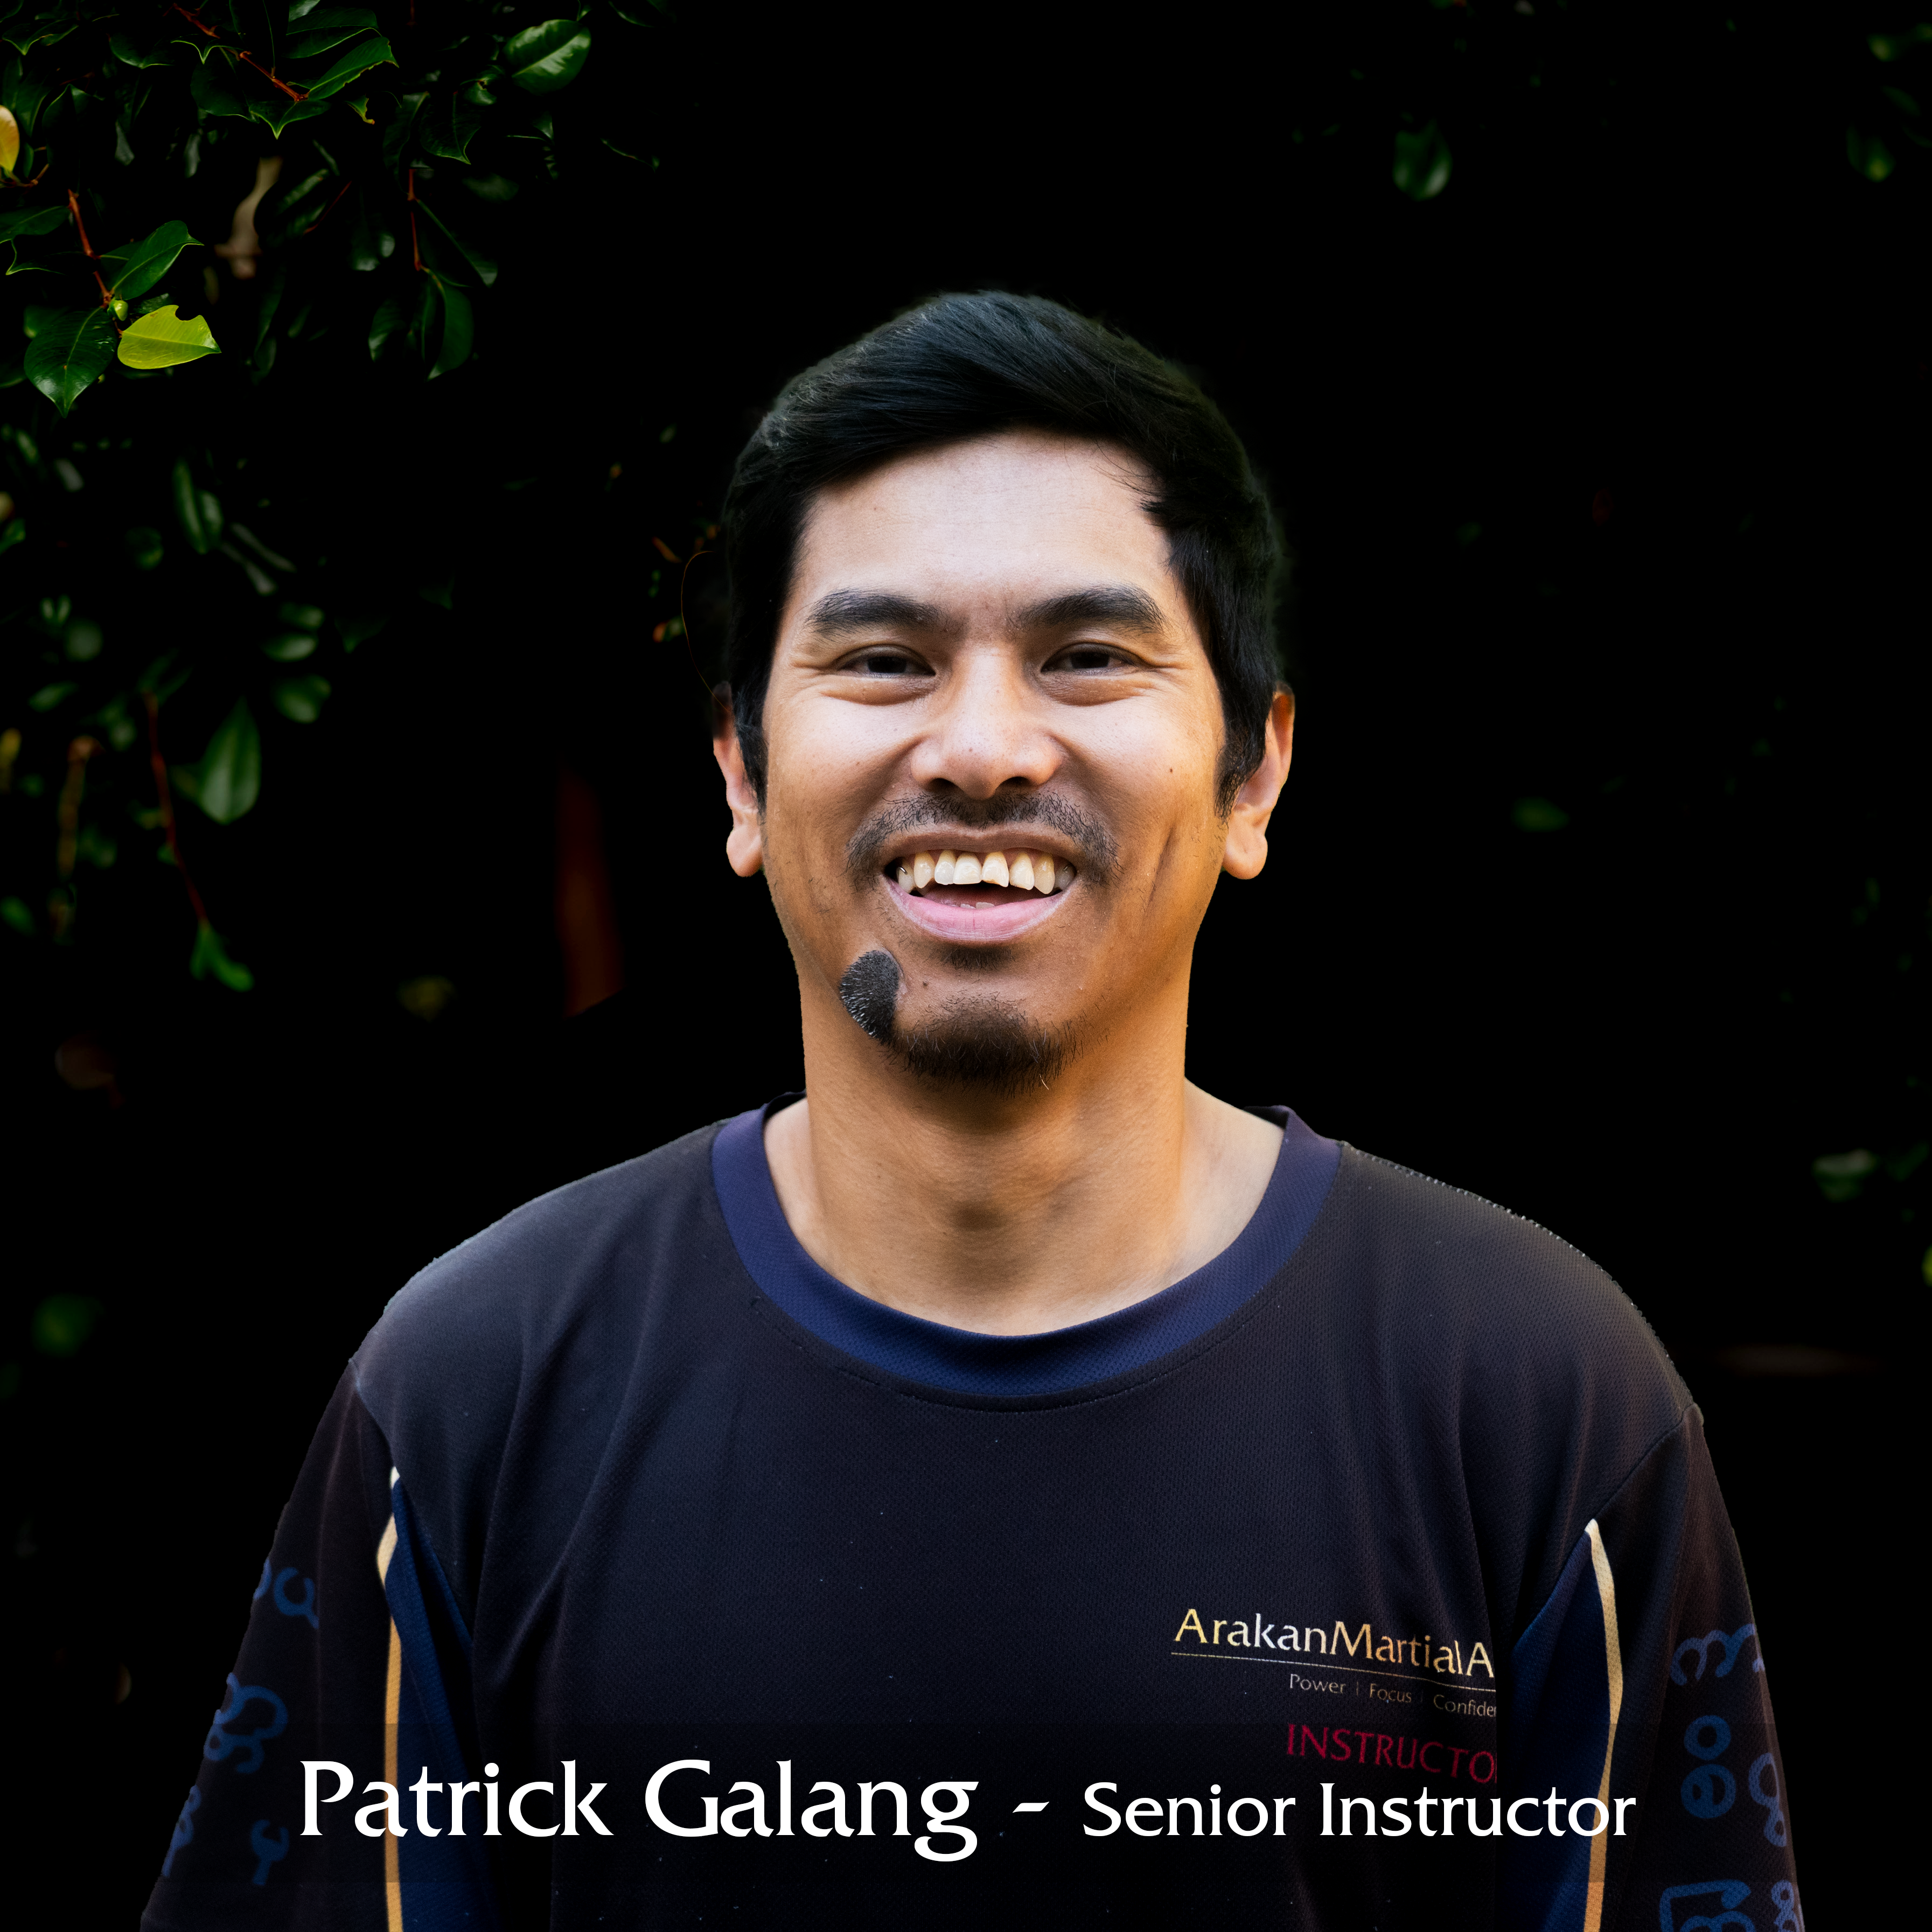 Patrick Galang